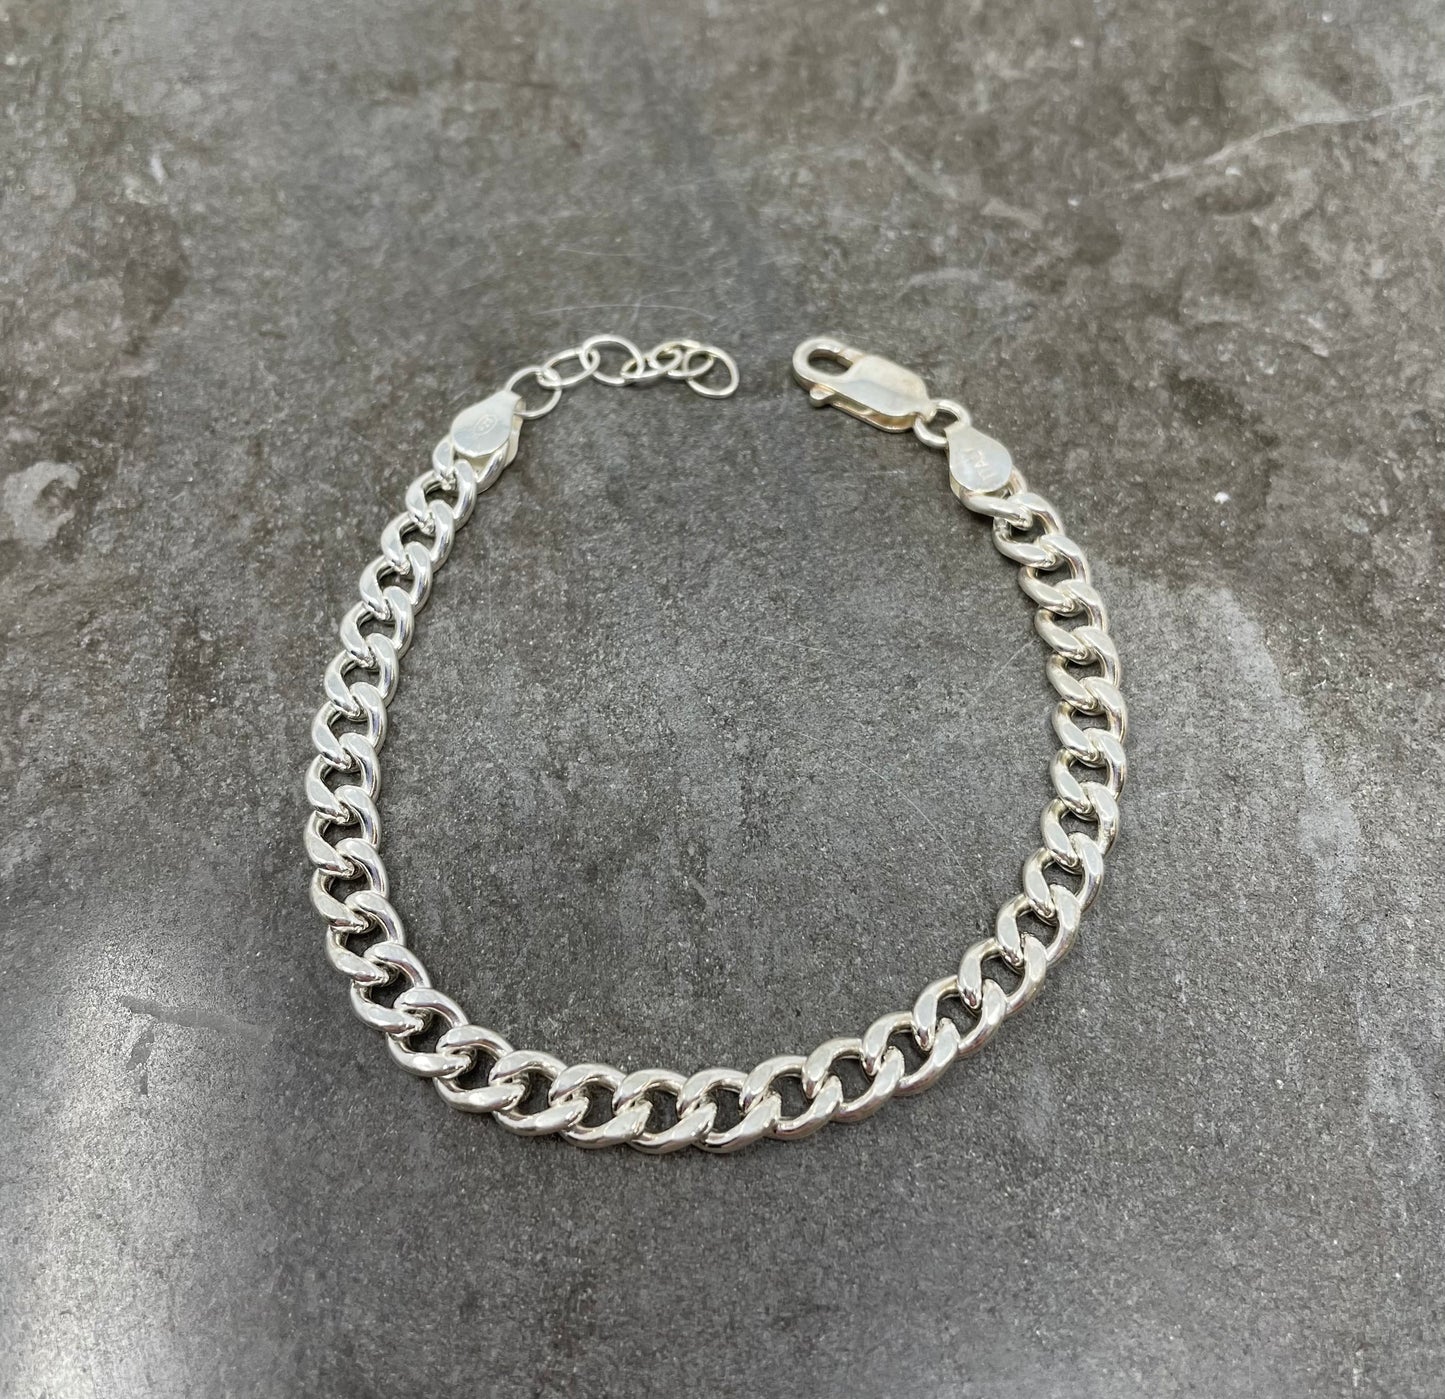 Bracciale catena grumette in argento baltezza circa 0,4 mm